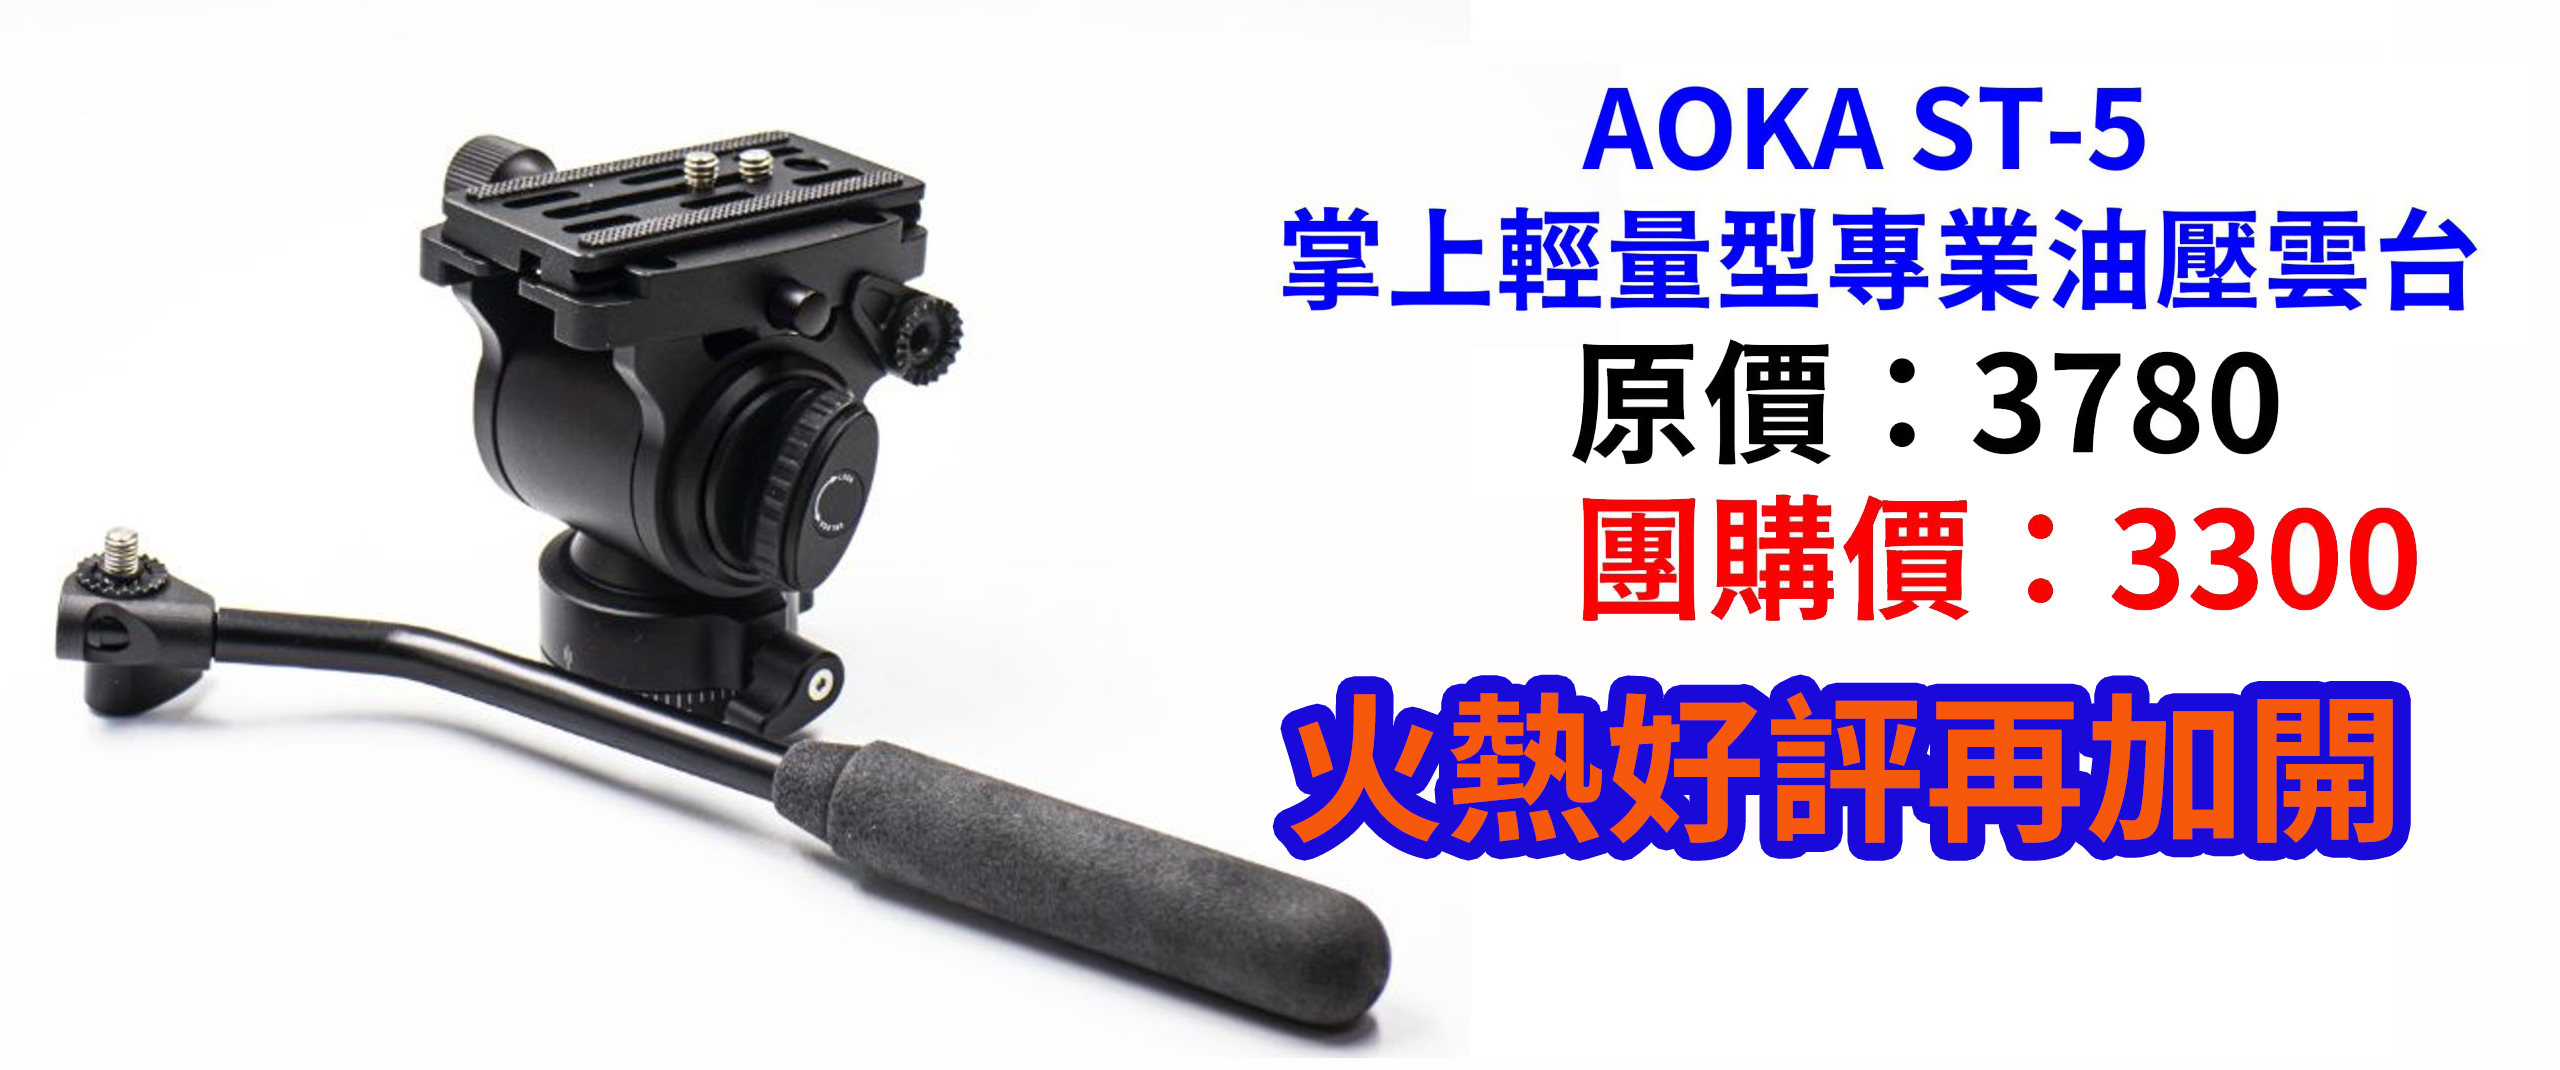 [團購] AOKA ST-5 掌上輕量型專業油壓雲台